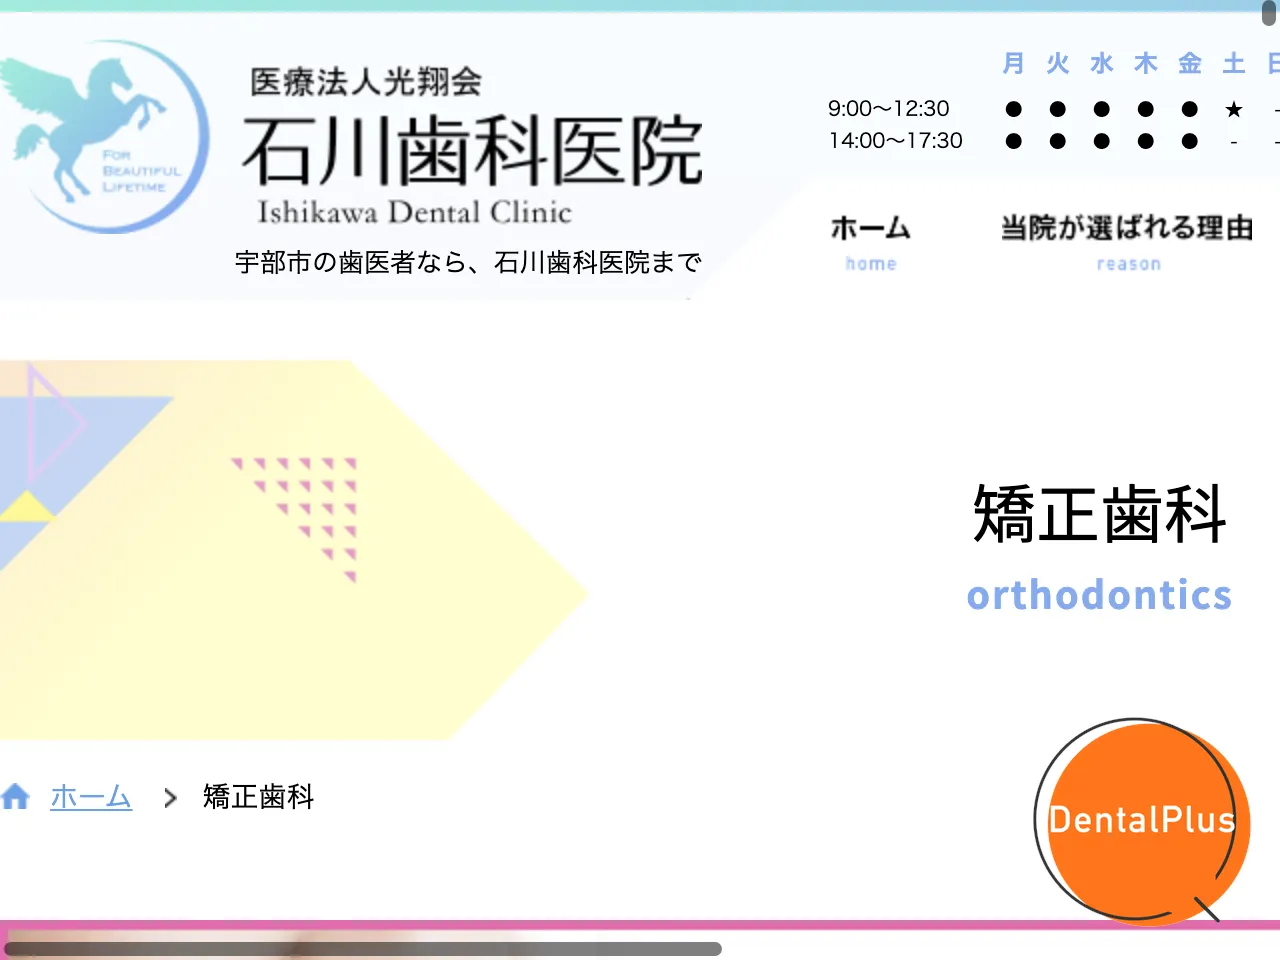 石川歯科医院のウェブサイト